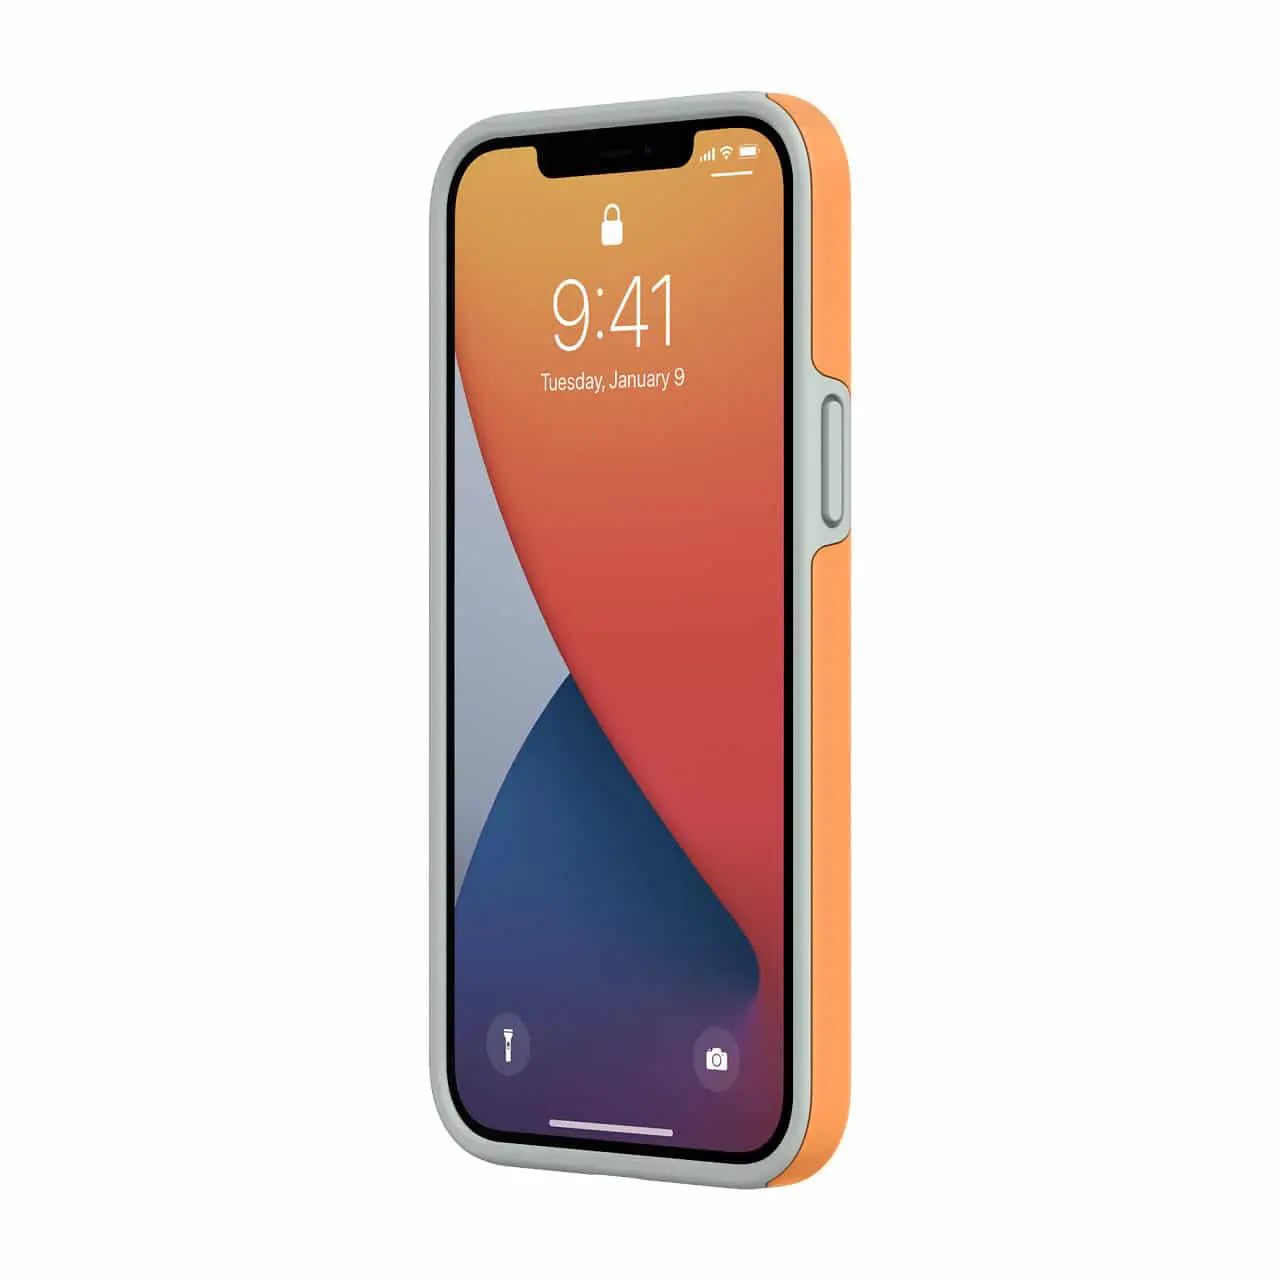 เคสกันกระแทก Incipio รุ่น Duo - iPhone 12 Pro Max - สีส้ม/เทา